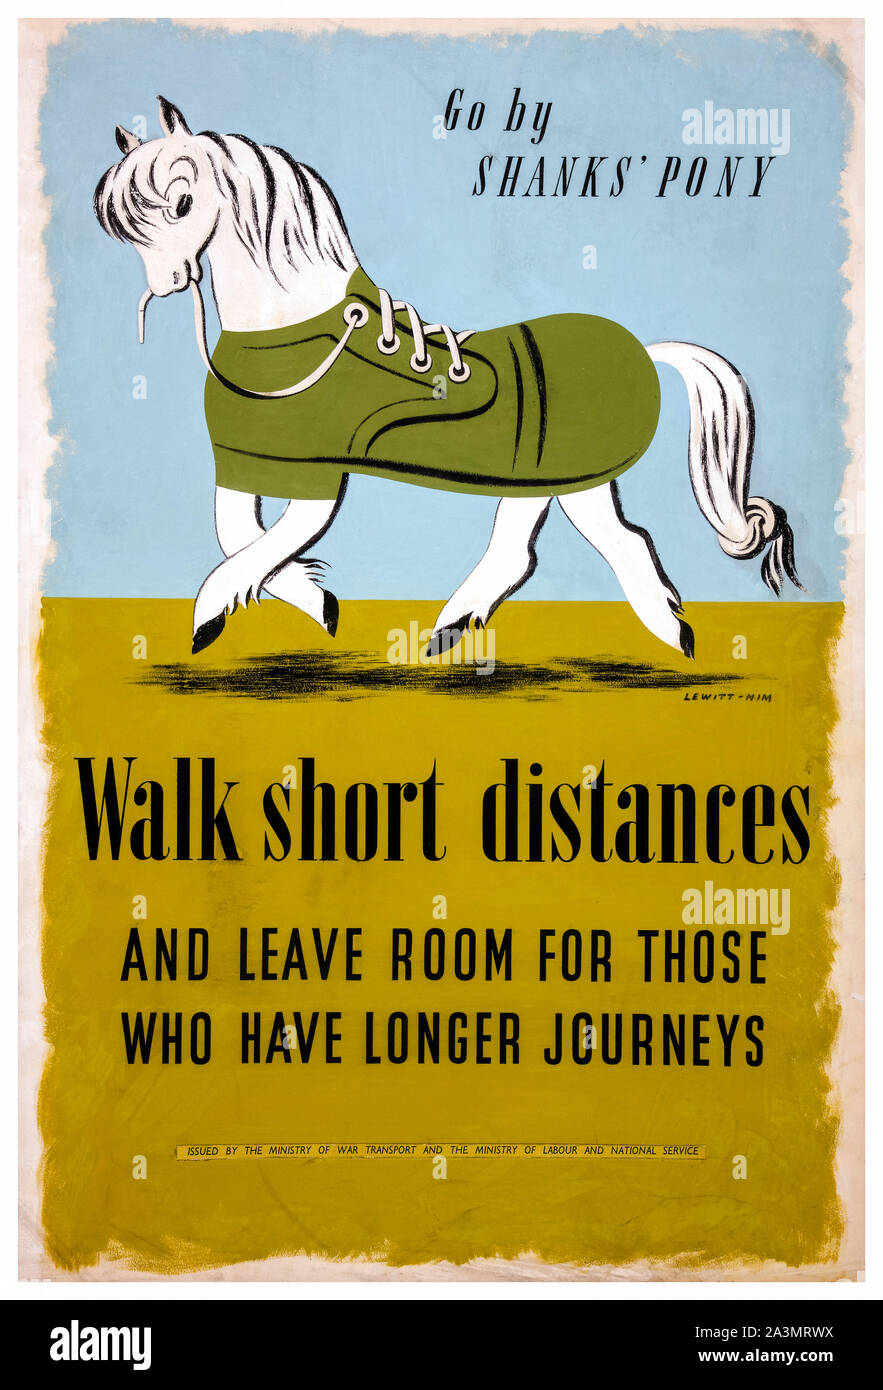 Britische, WW2, Steigerung der Energieeffizienz im Verkehr, gehen Sie kurze Wege, Shanks' Pony, leichte Belastung für Transport, Poster, 1939-1946 Stockfoto